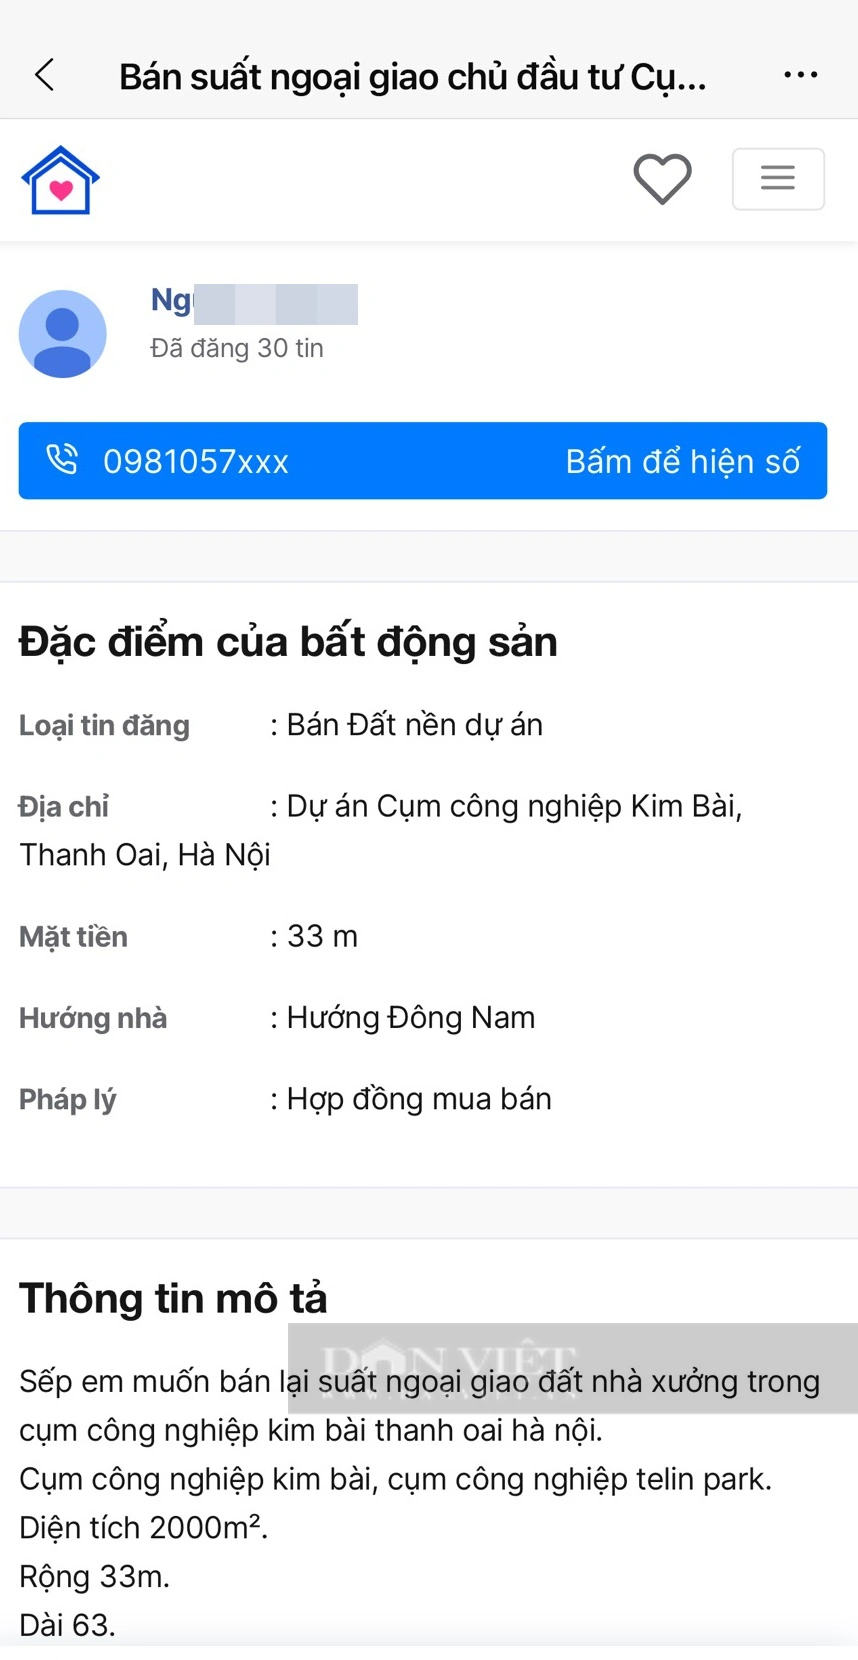 Cụm Công nghiệp Kim Bài (Thanh Oai, Hà Nội) chưa khởi công đã có tin "phân lô" rao bán trên mạng- Ảnh 2.